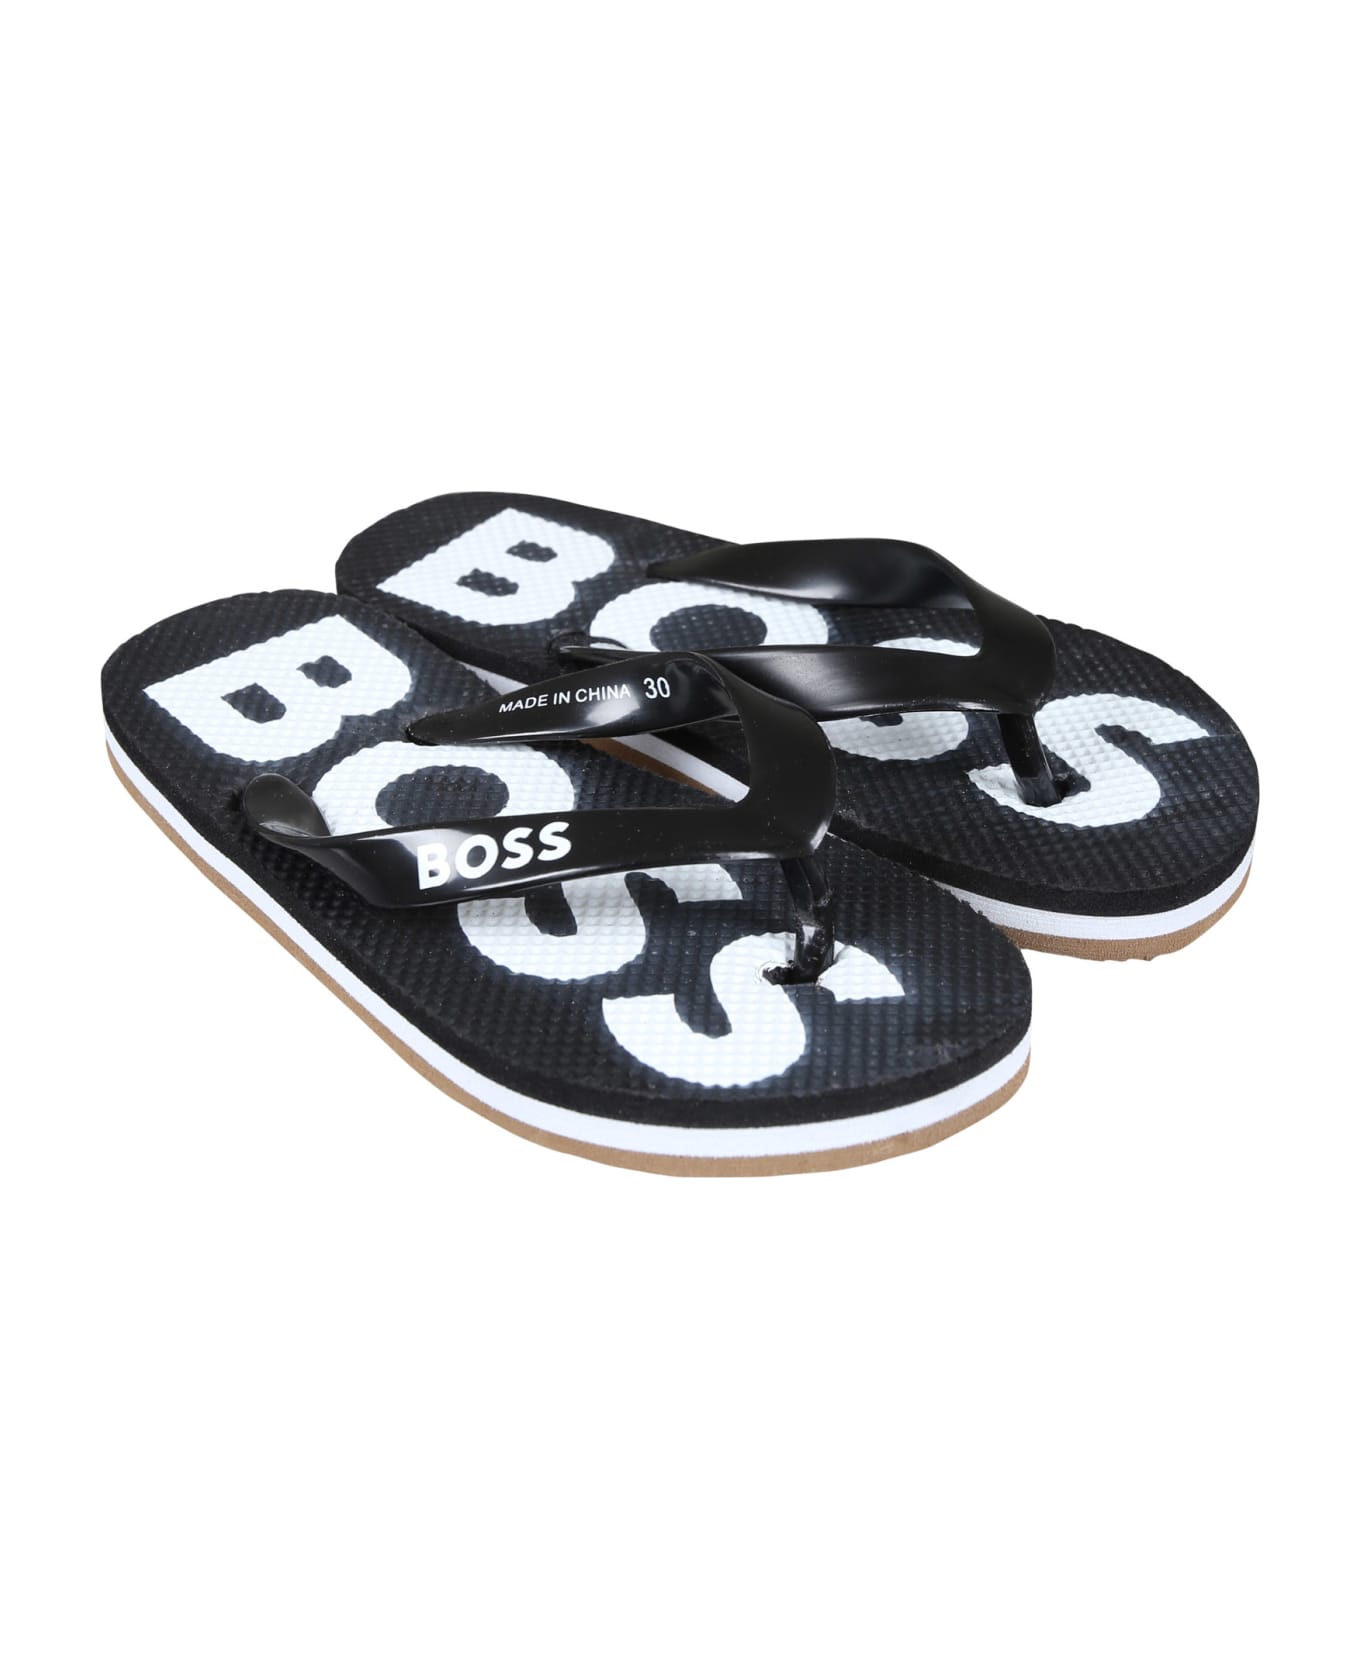 Hugo Boss Black Flip Flops For Boy With Logo - Black シューズ